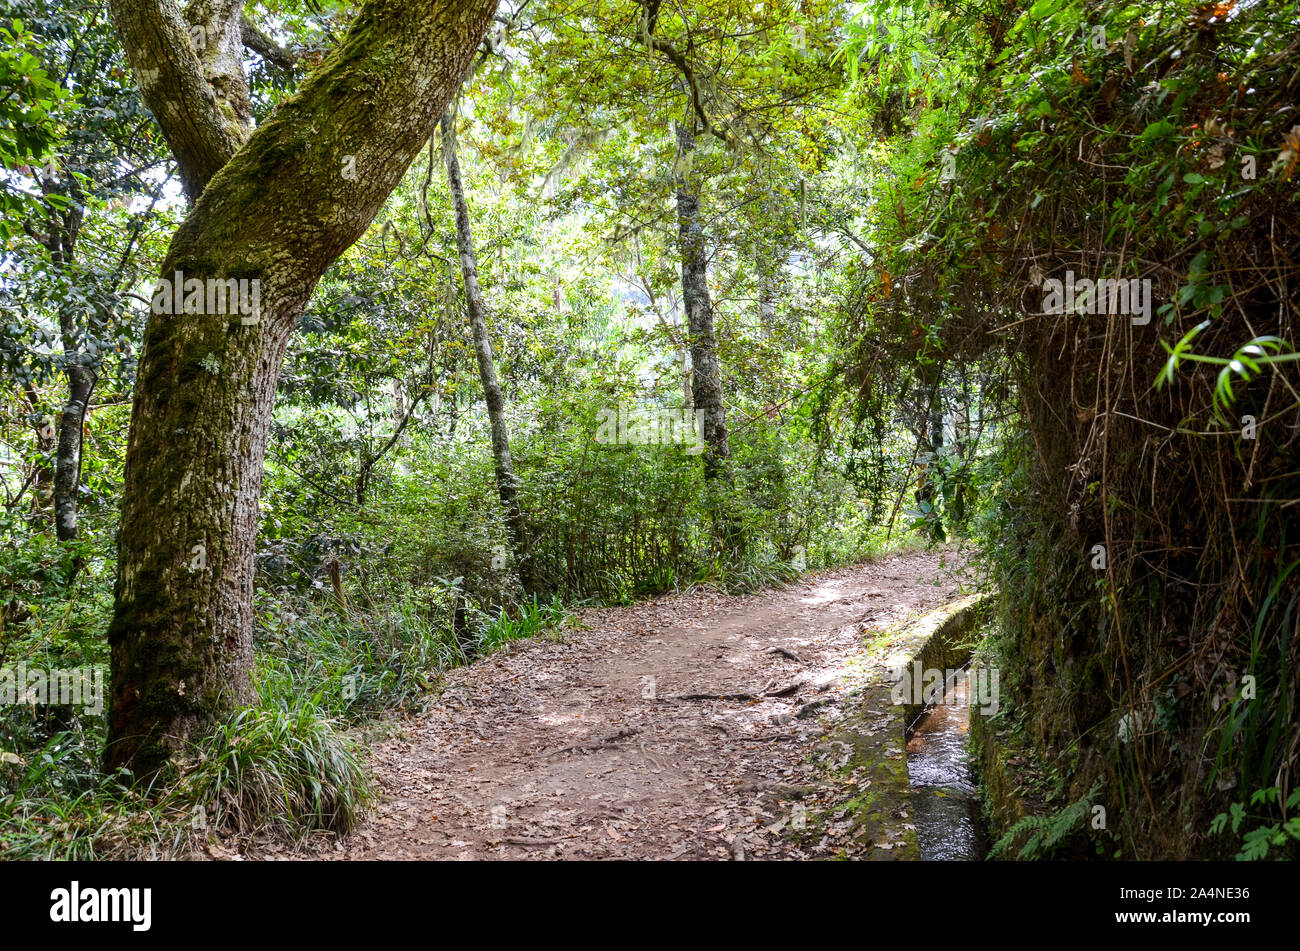 Wanderweg im Wald während der Levada dos Balcoes Trail in Madeira, Portugal. Das Bewässerungssystem Kanal mit einem Strom von Wasser. Grüne Bäume um den Weg. Wandern in den Wald. Stockfoto